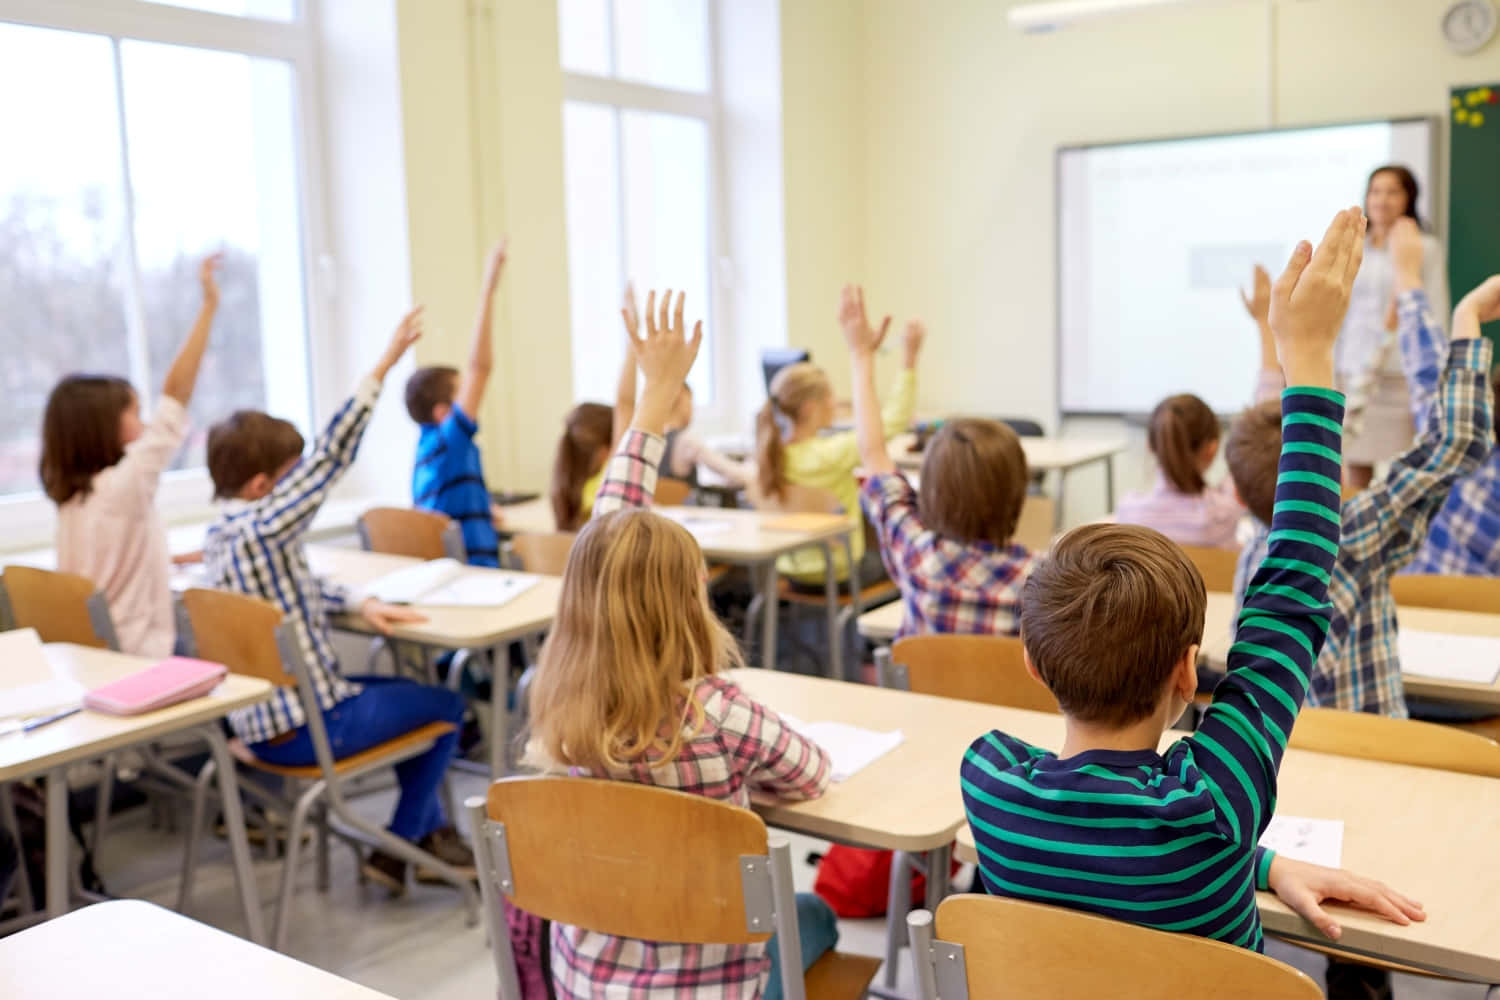 Kinderheben In Einem Klassenzimmer Ihre Hände.